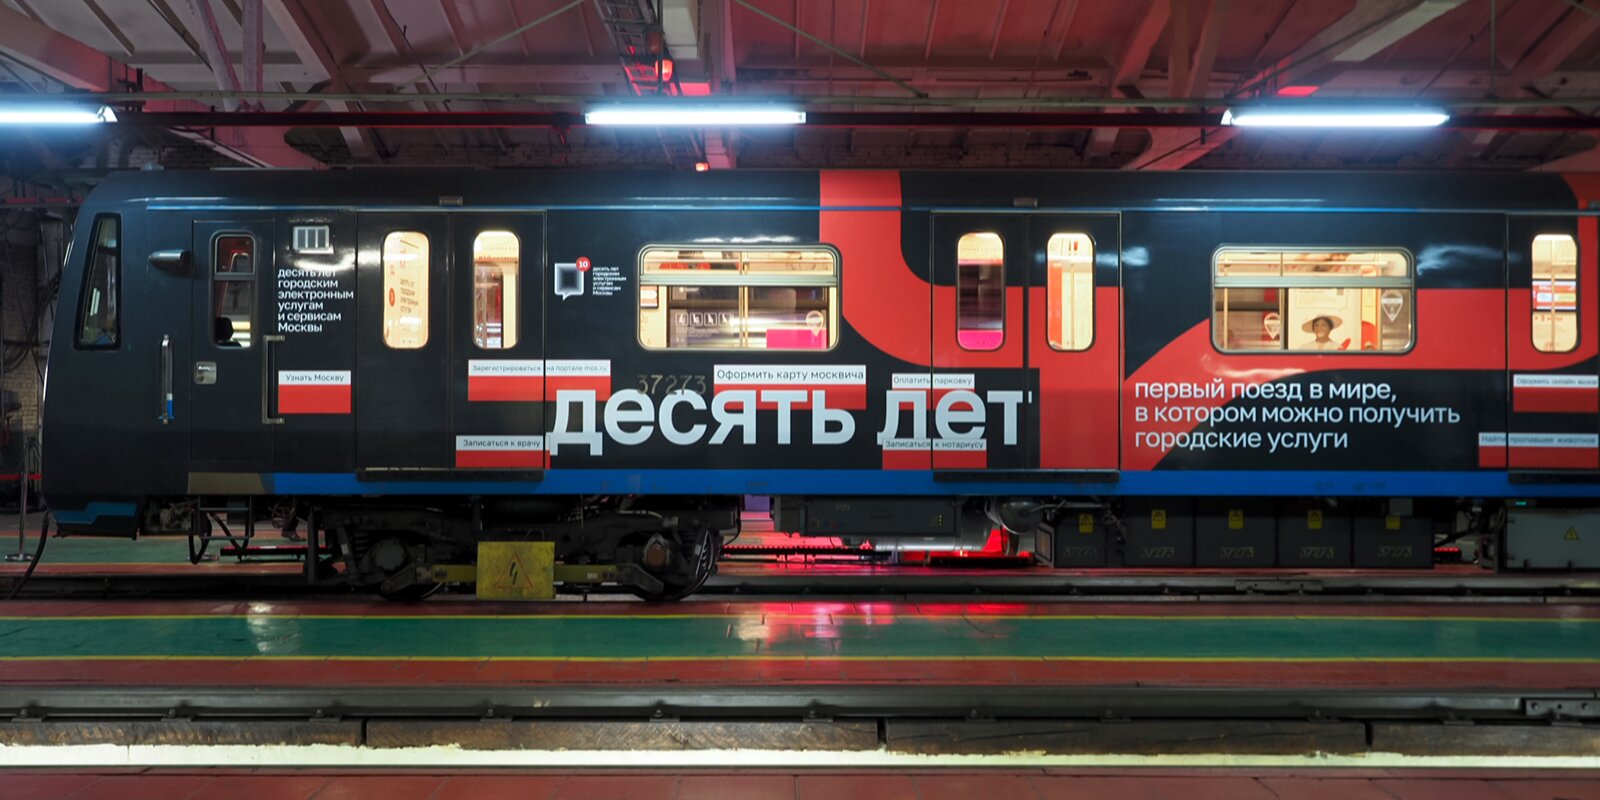 Тематический поезд запустили в московском метро